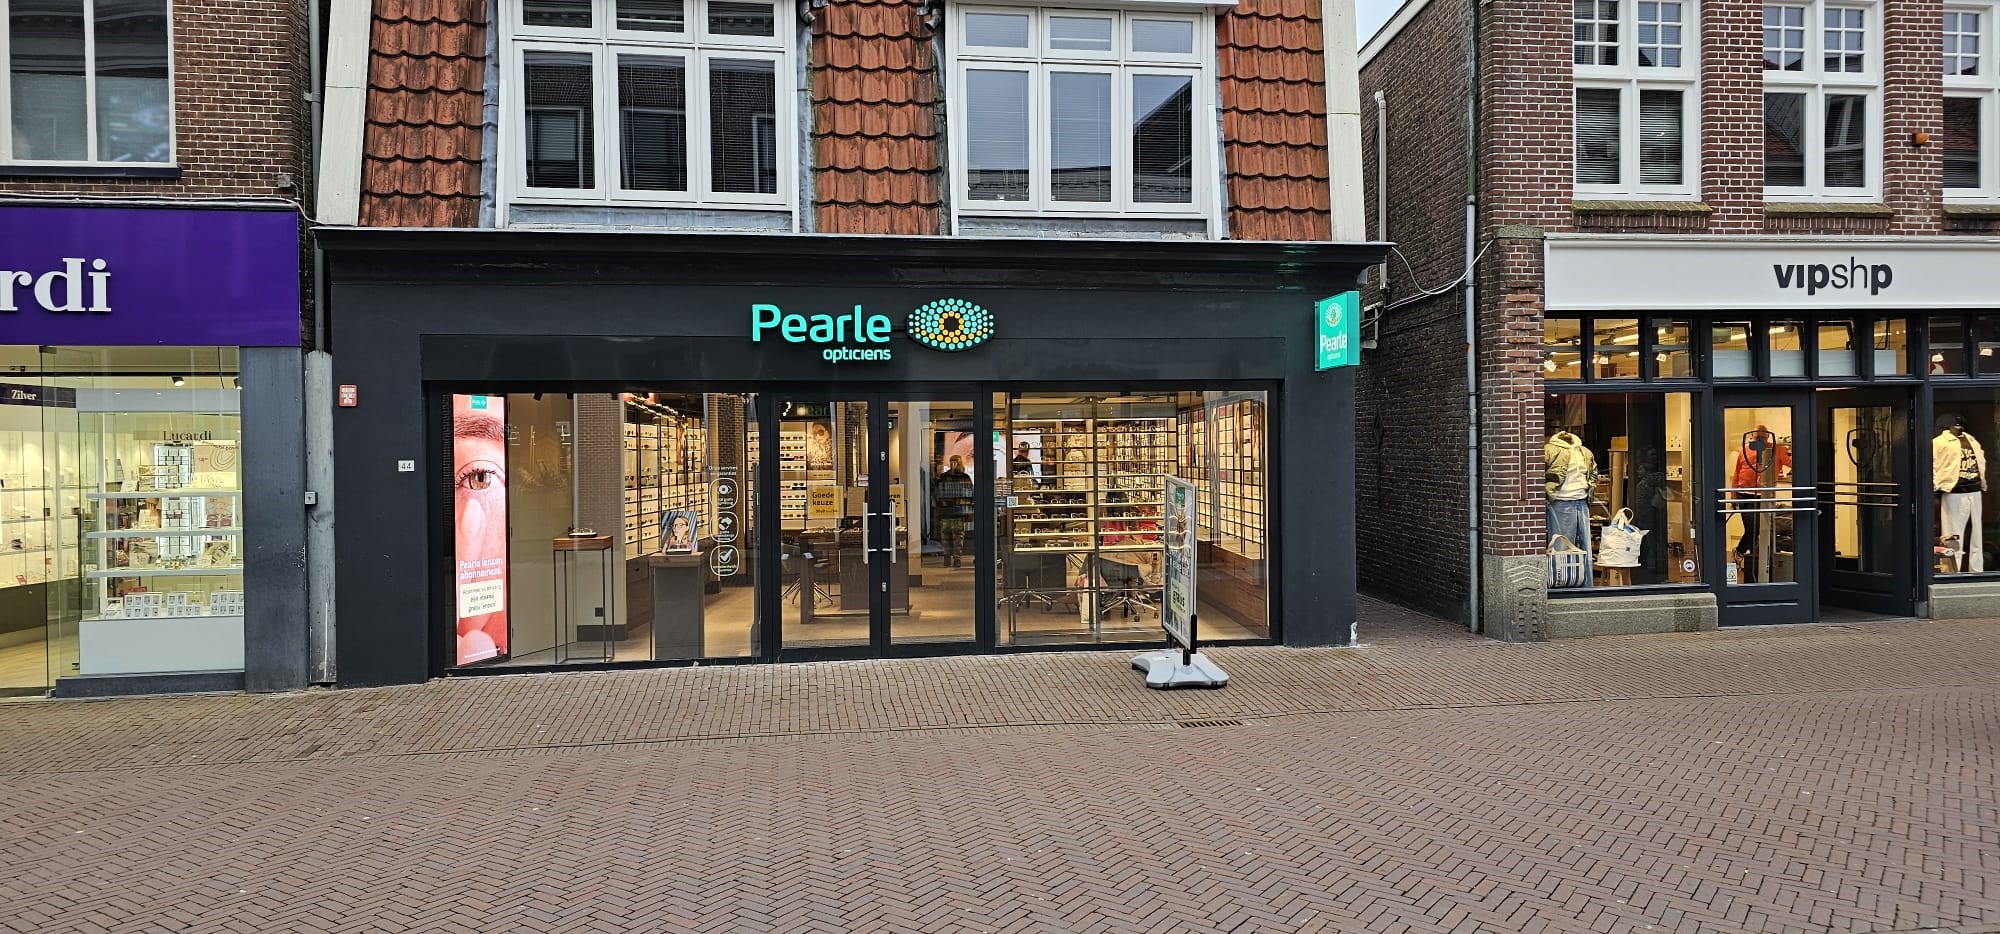 Pearle Opticiens Bergen Op Zoom